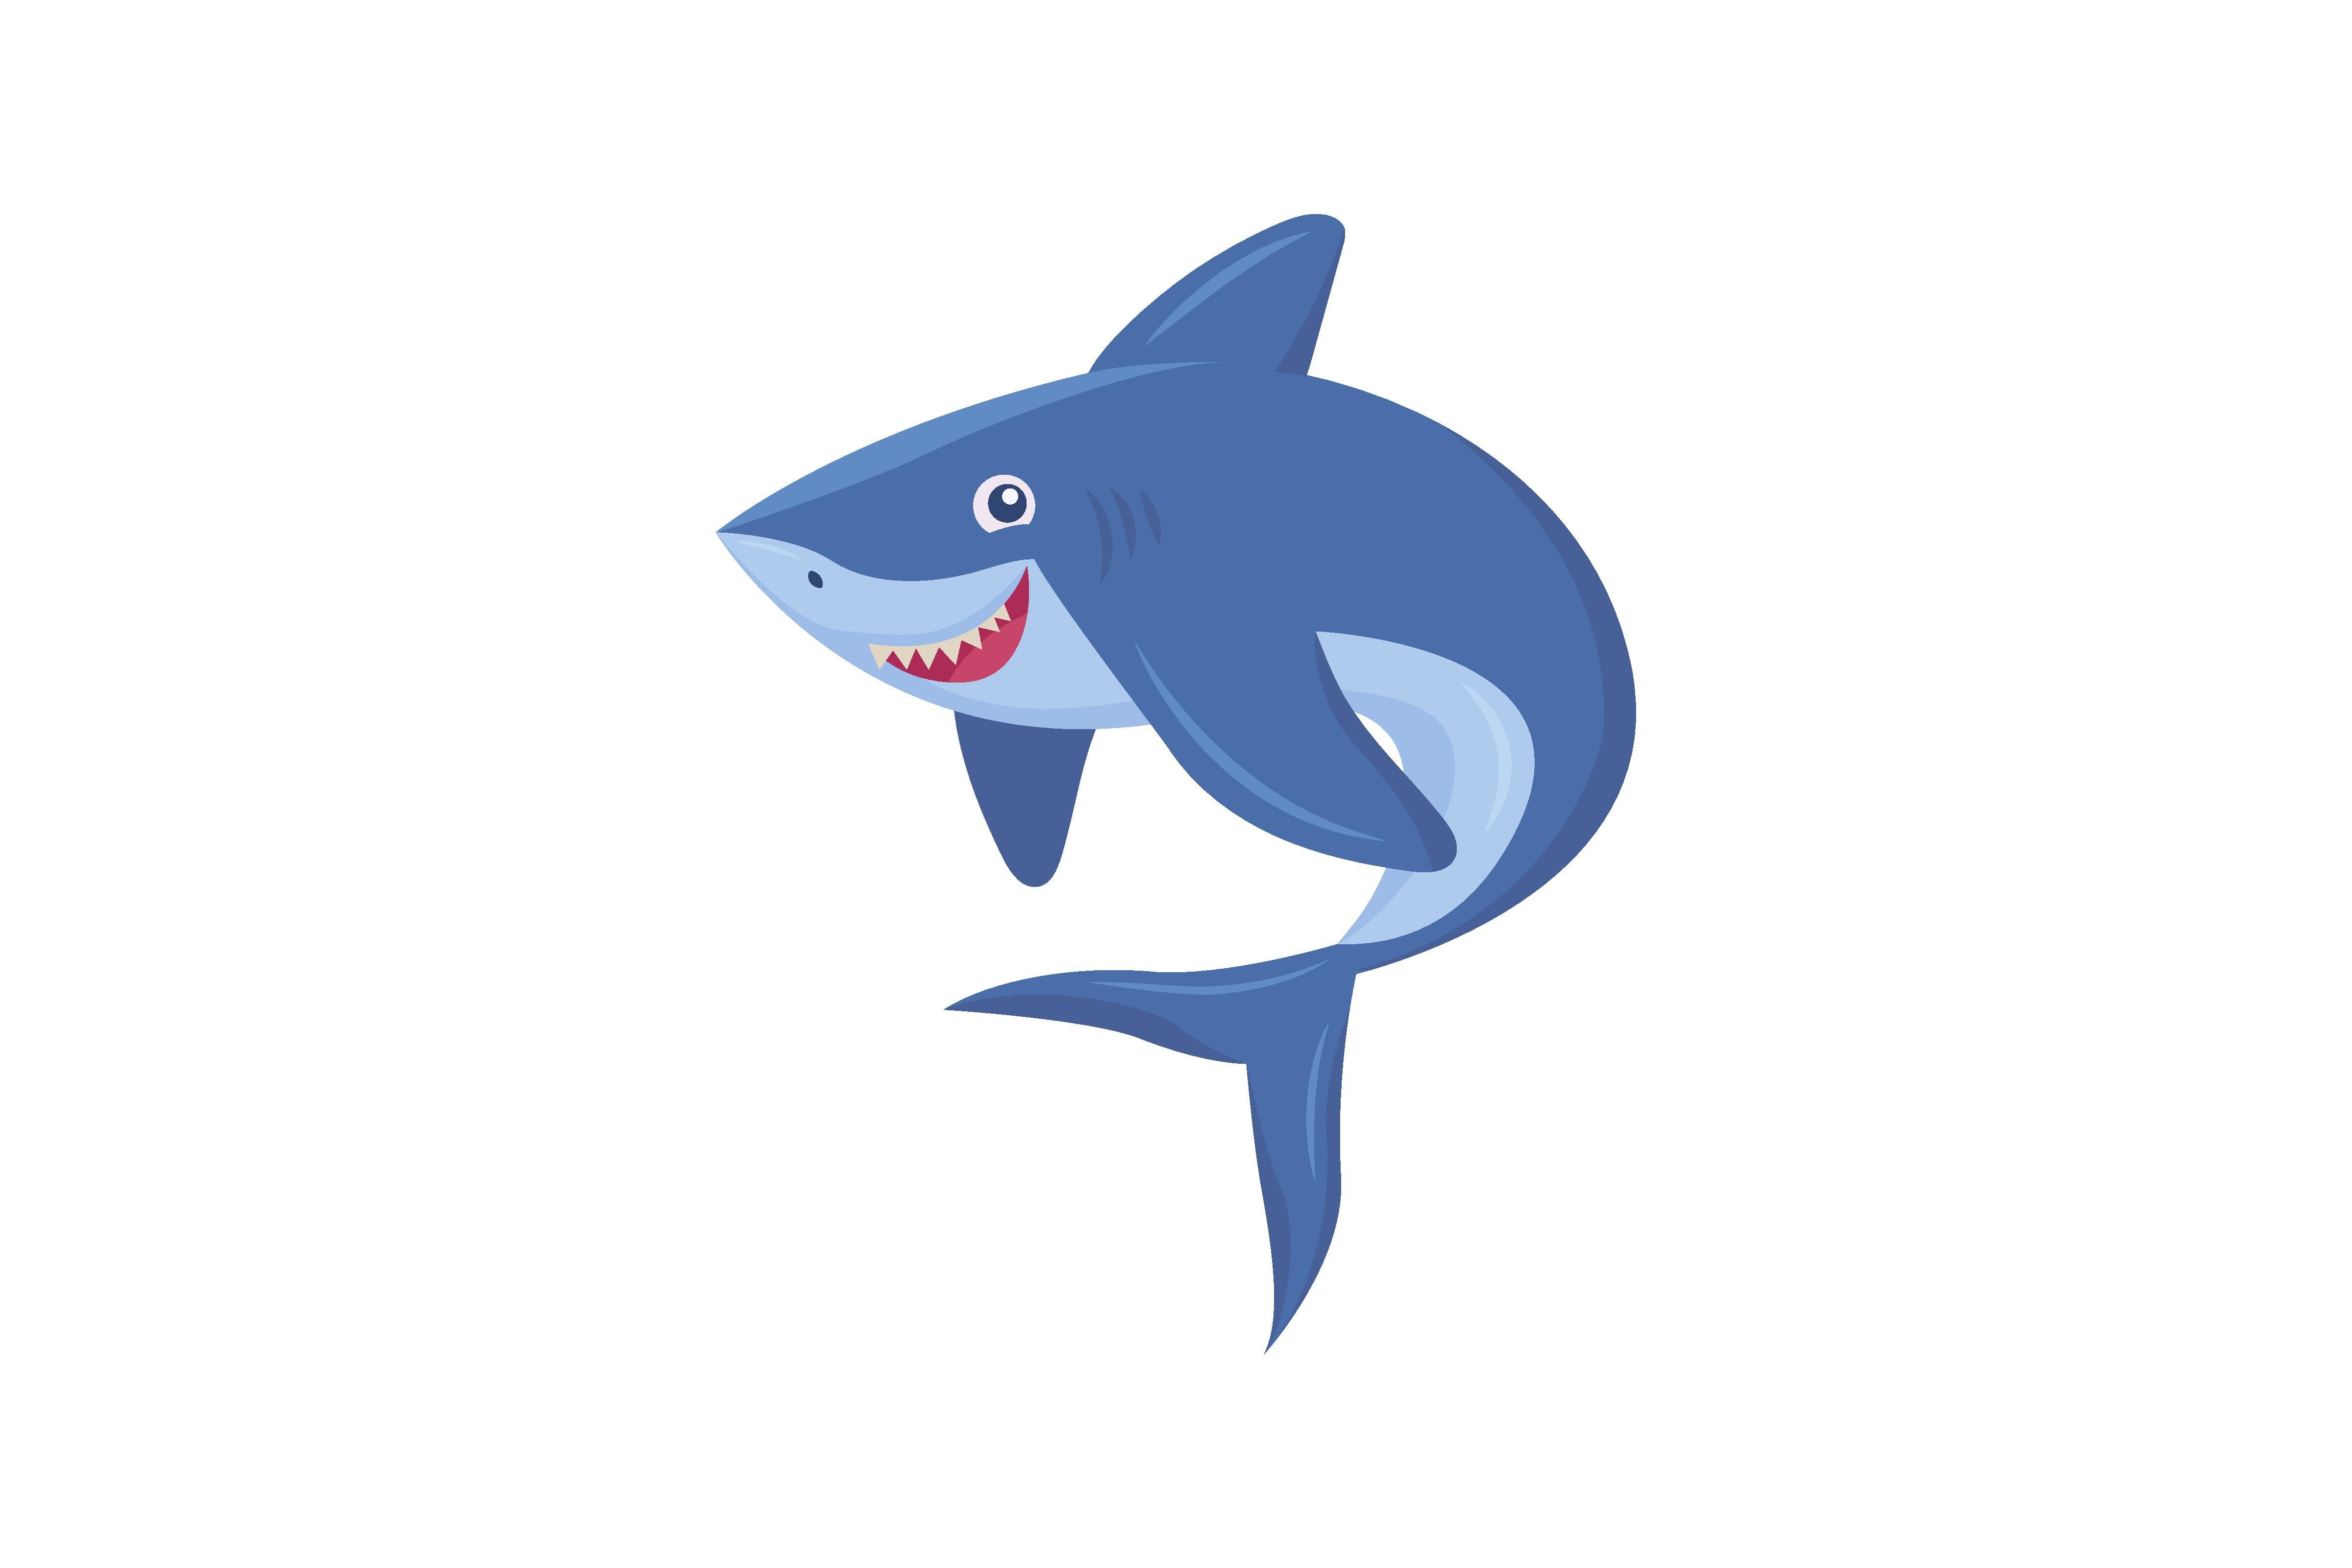 Cute Smiling Shark Flat Picture. Cartoon Grafik Von pch.vector · Creative  Fabrica